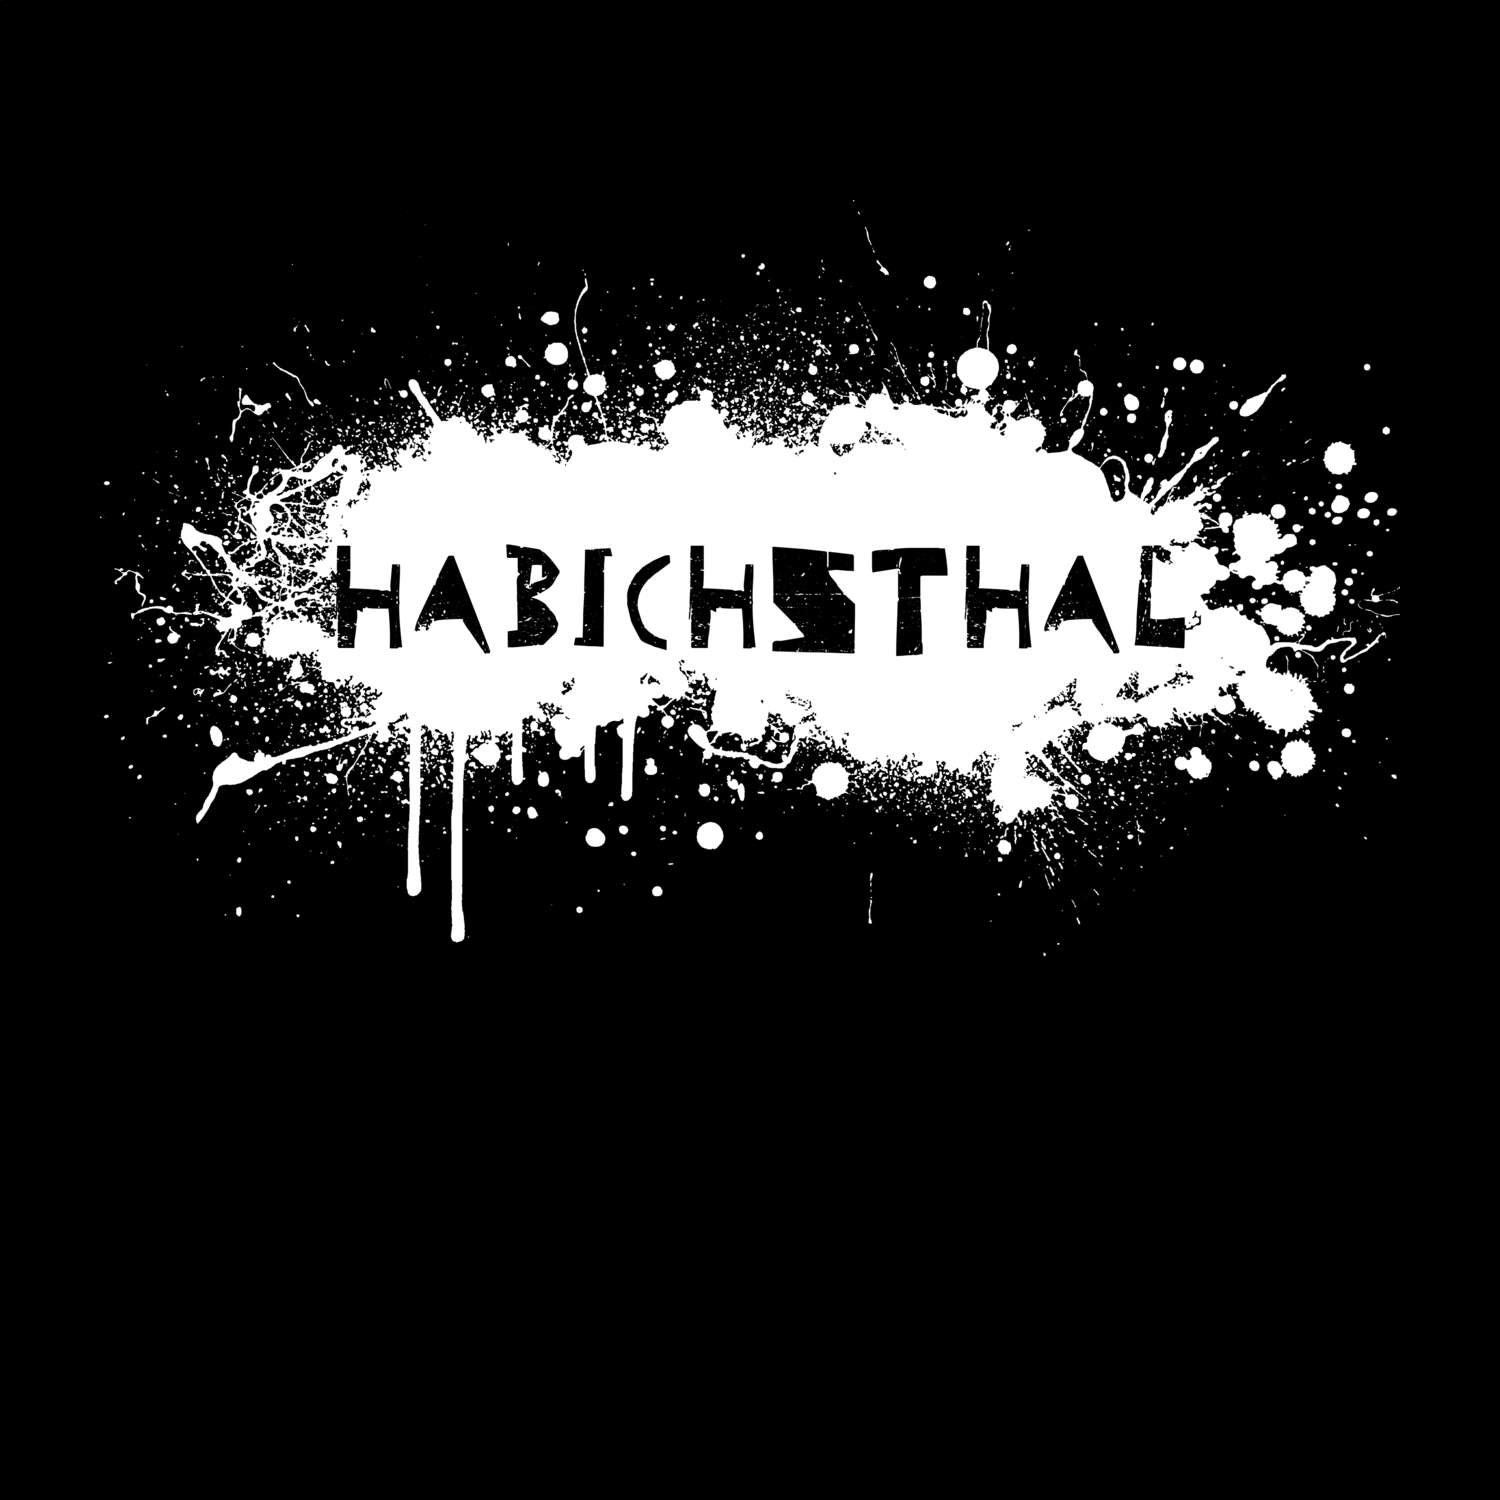 Habichsthal T-Shirt »Paint Splash Punk«